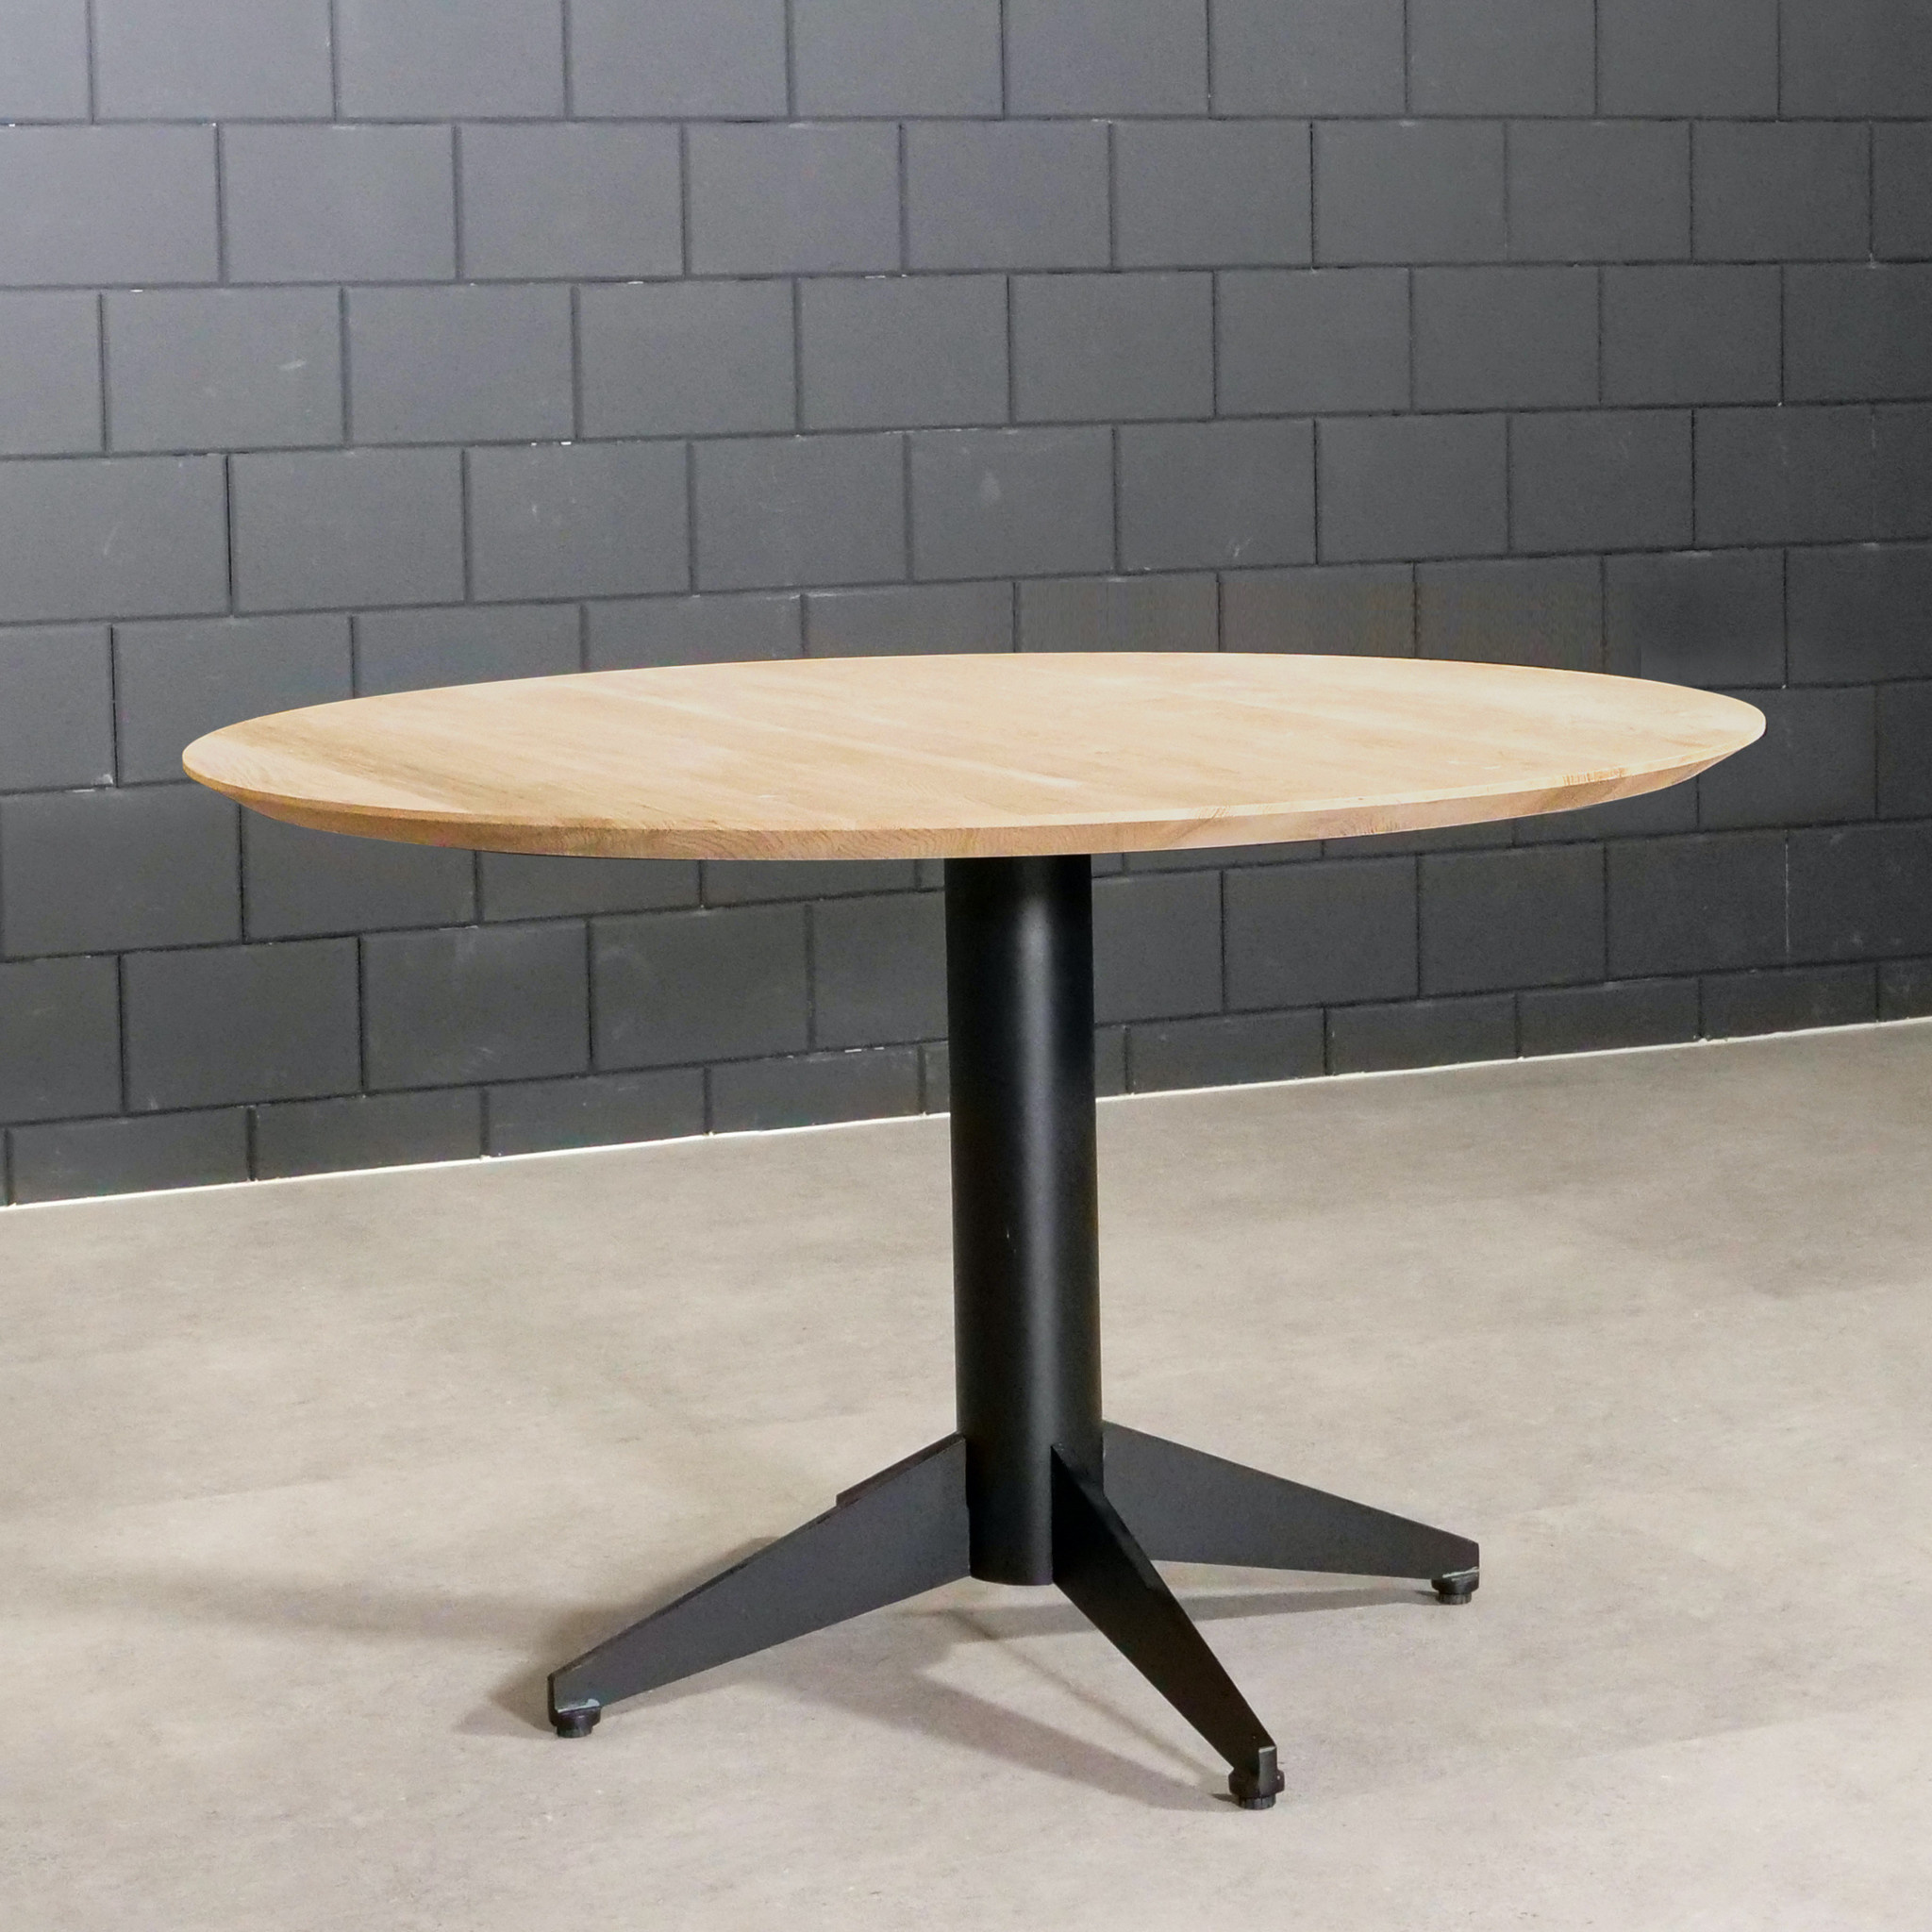  Tischgestell Metall 4-Fuß - 80x80 cm breit - 72,5 cm hoch - Rohrprofil: 11,4 cm - Mehrteilig - Stahl Tischfuß / Mittelfuß Rund / Quadratisch - Beschichtet - Schwarz